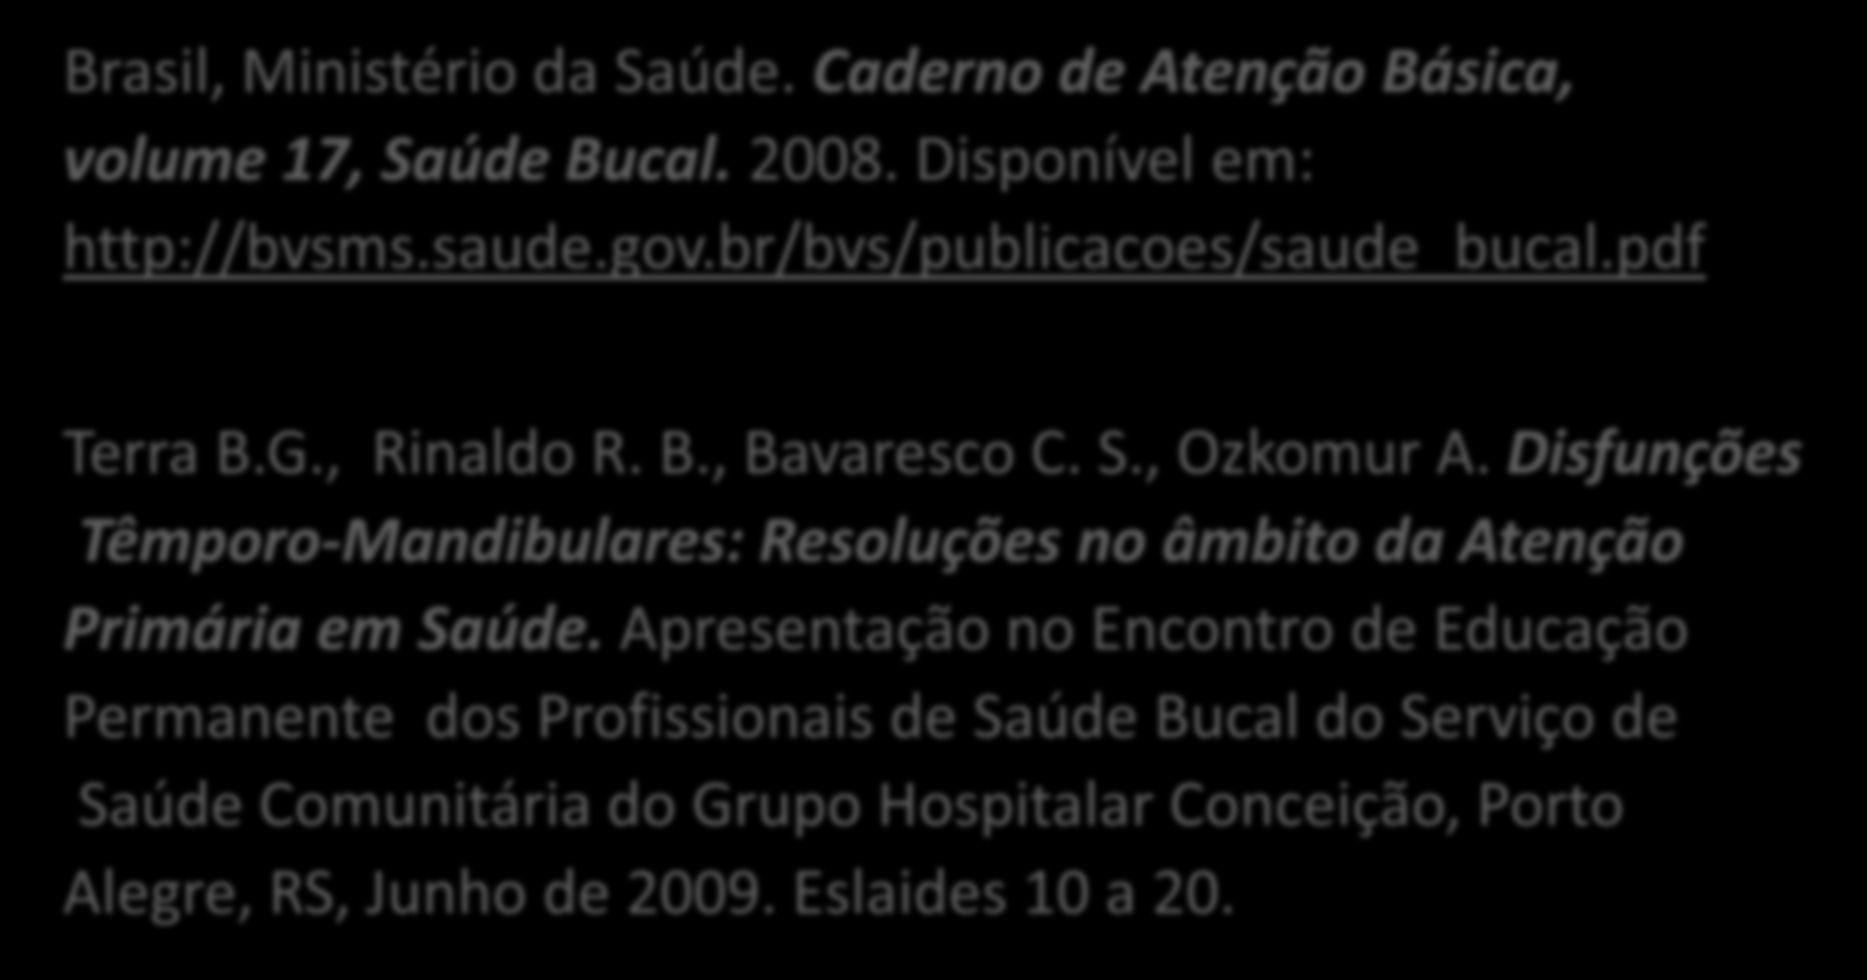 Referências Brasil, Ministério da Saúde. Caderno de Atenção Básica, volume 17, Saúde Bucal. 2008. Disponível em: http://bvsms.saude.gov.br/bvs/publicacoes/saude_bucal.pdf Terra B.G., Rinaldo R. B., Bavaresco C.